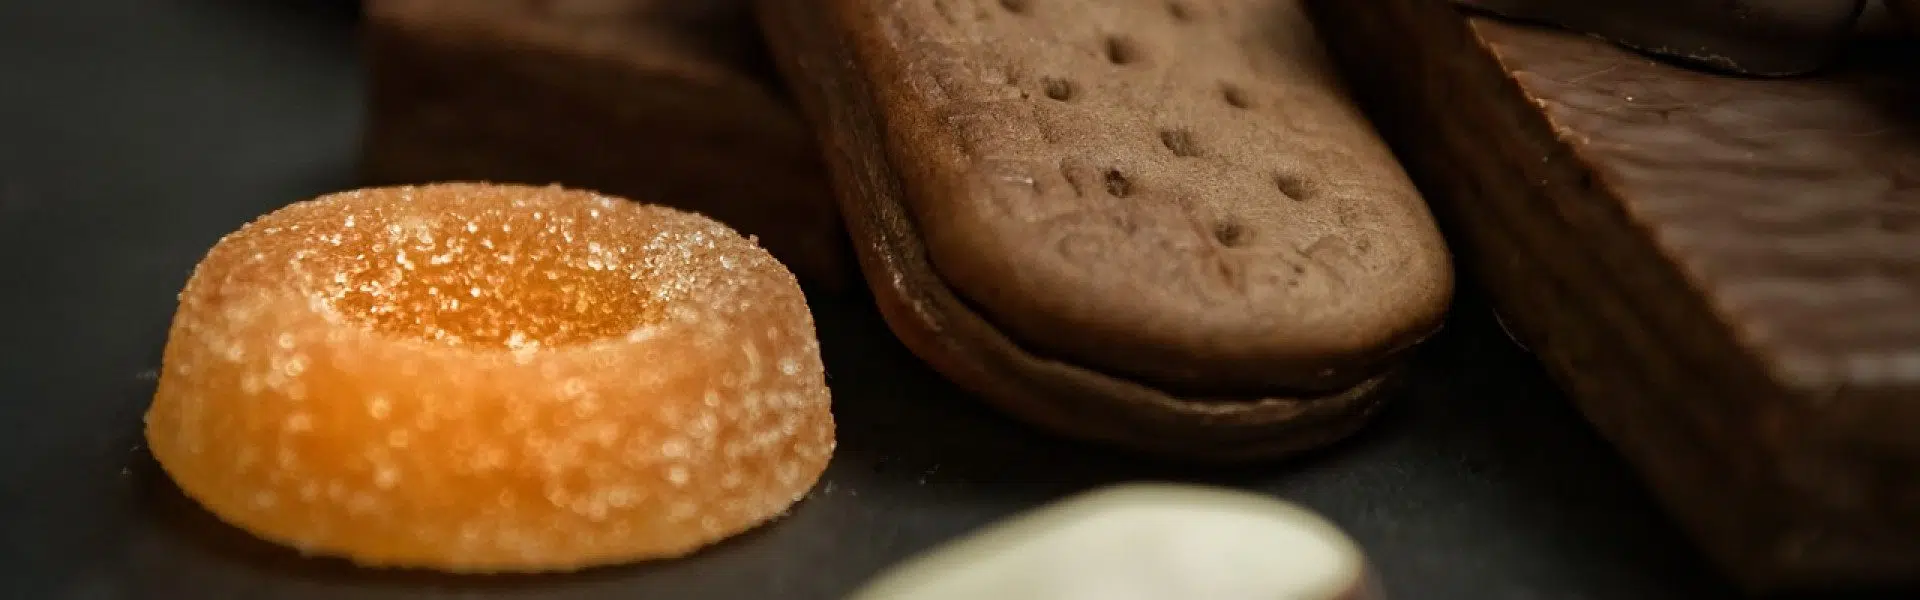 Les biscuits bretons, quel est le secret de leur succès ?